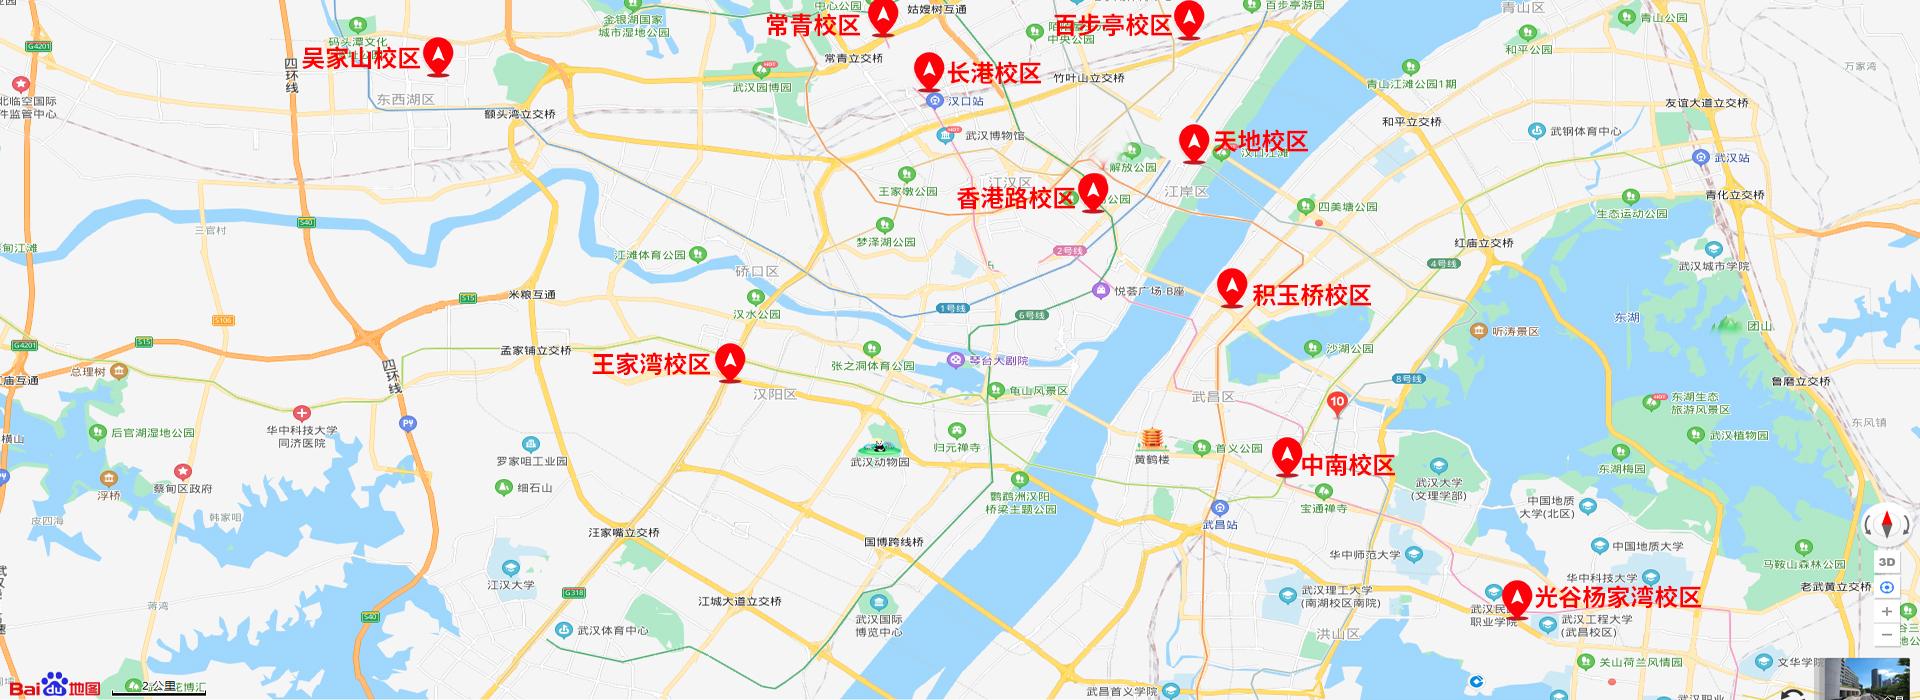 武汉尖锋教育10大校区地图标注